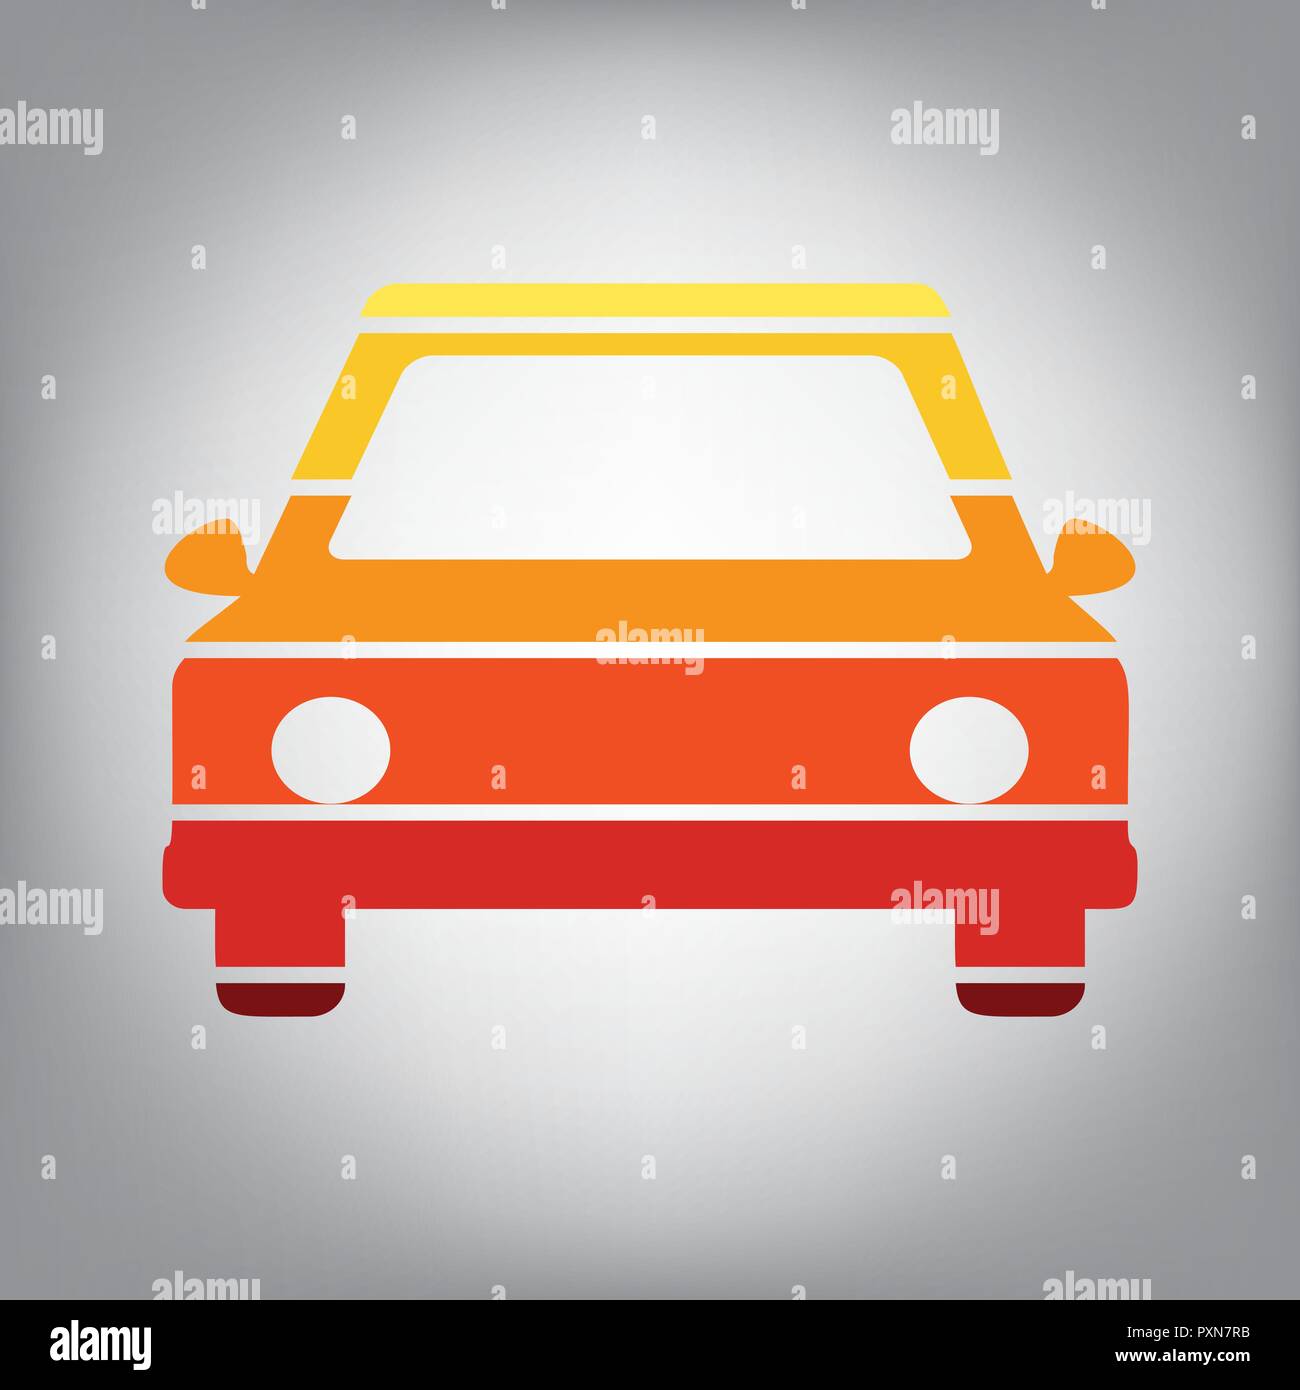 Auto anmelden Abbildung. Vektor. Horizontal geschnitten Symbol mit Farben aus dem sonnigen Gradient in grauen Hintergrund. Stock Vektor